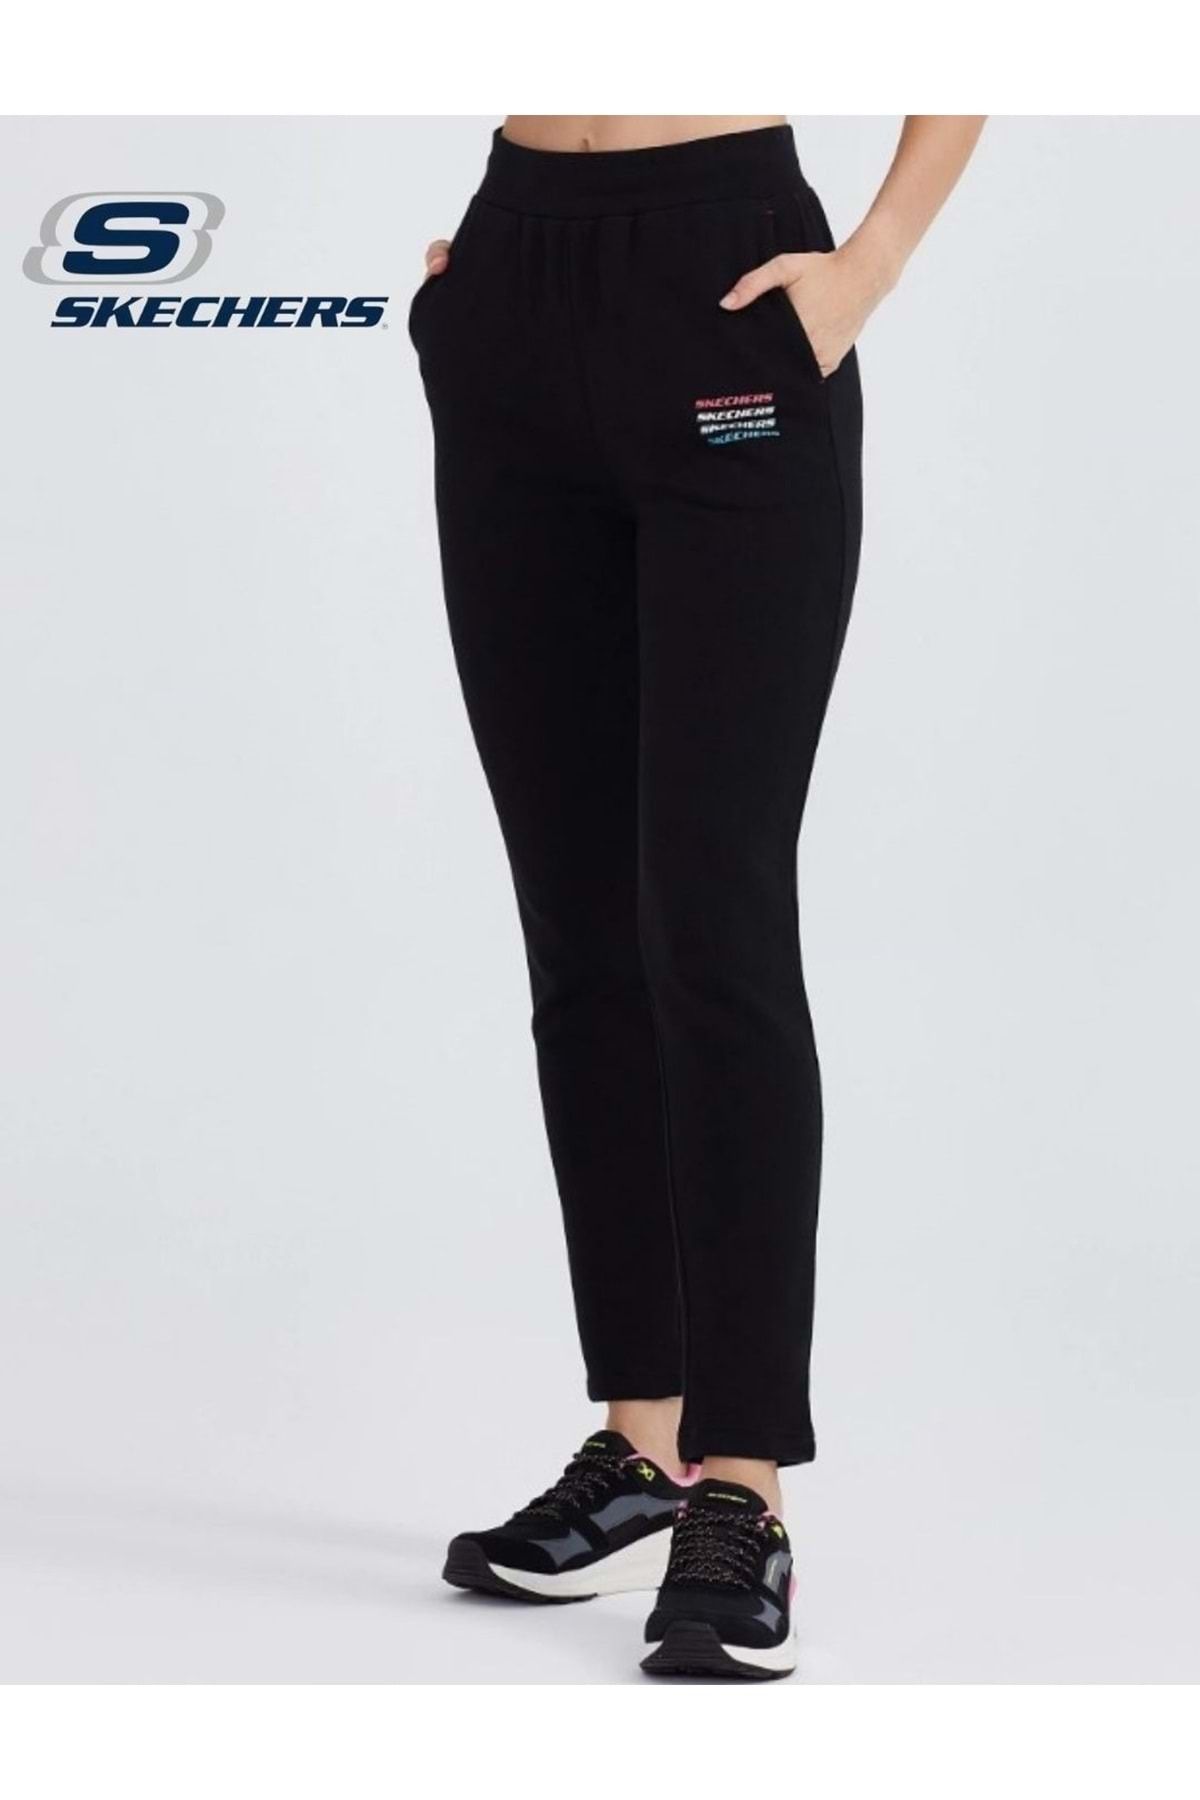 Skechers W Essential Slim Sweatpant S232239-001 Günlük Kadın Eşofman Altı Siyah